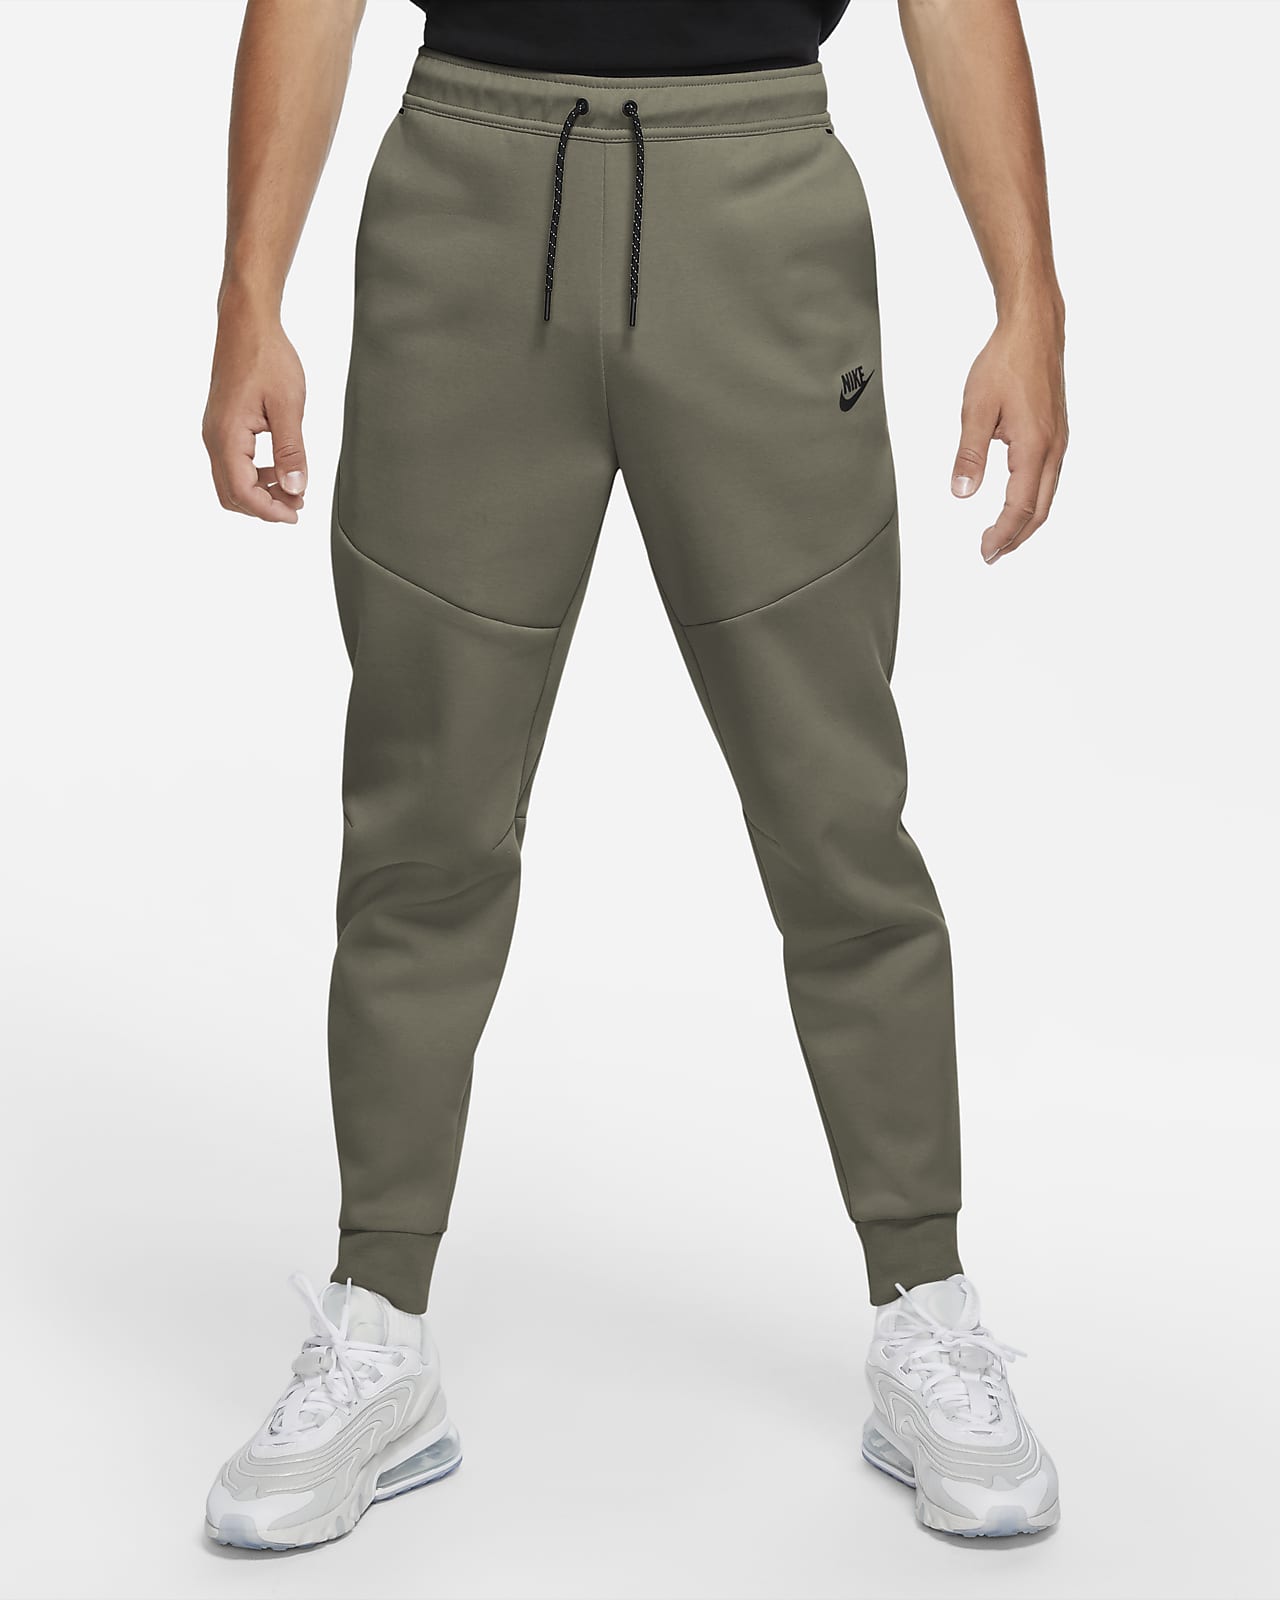 Мужские джоггеры Nike Sportswear Tech Fleece. Nike RU